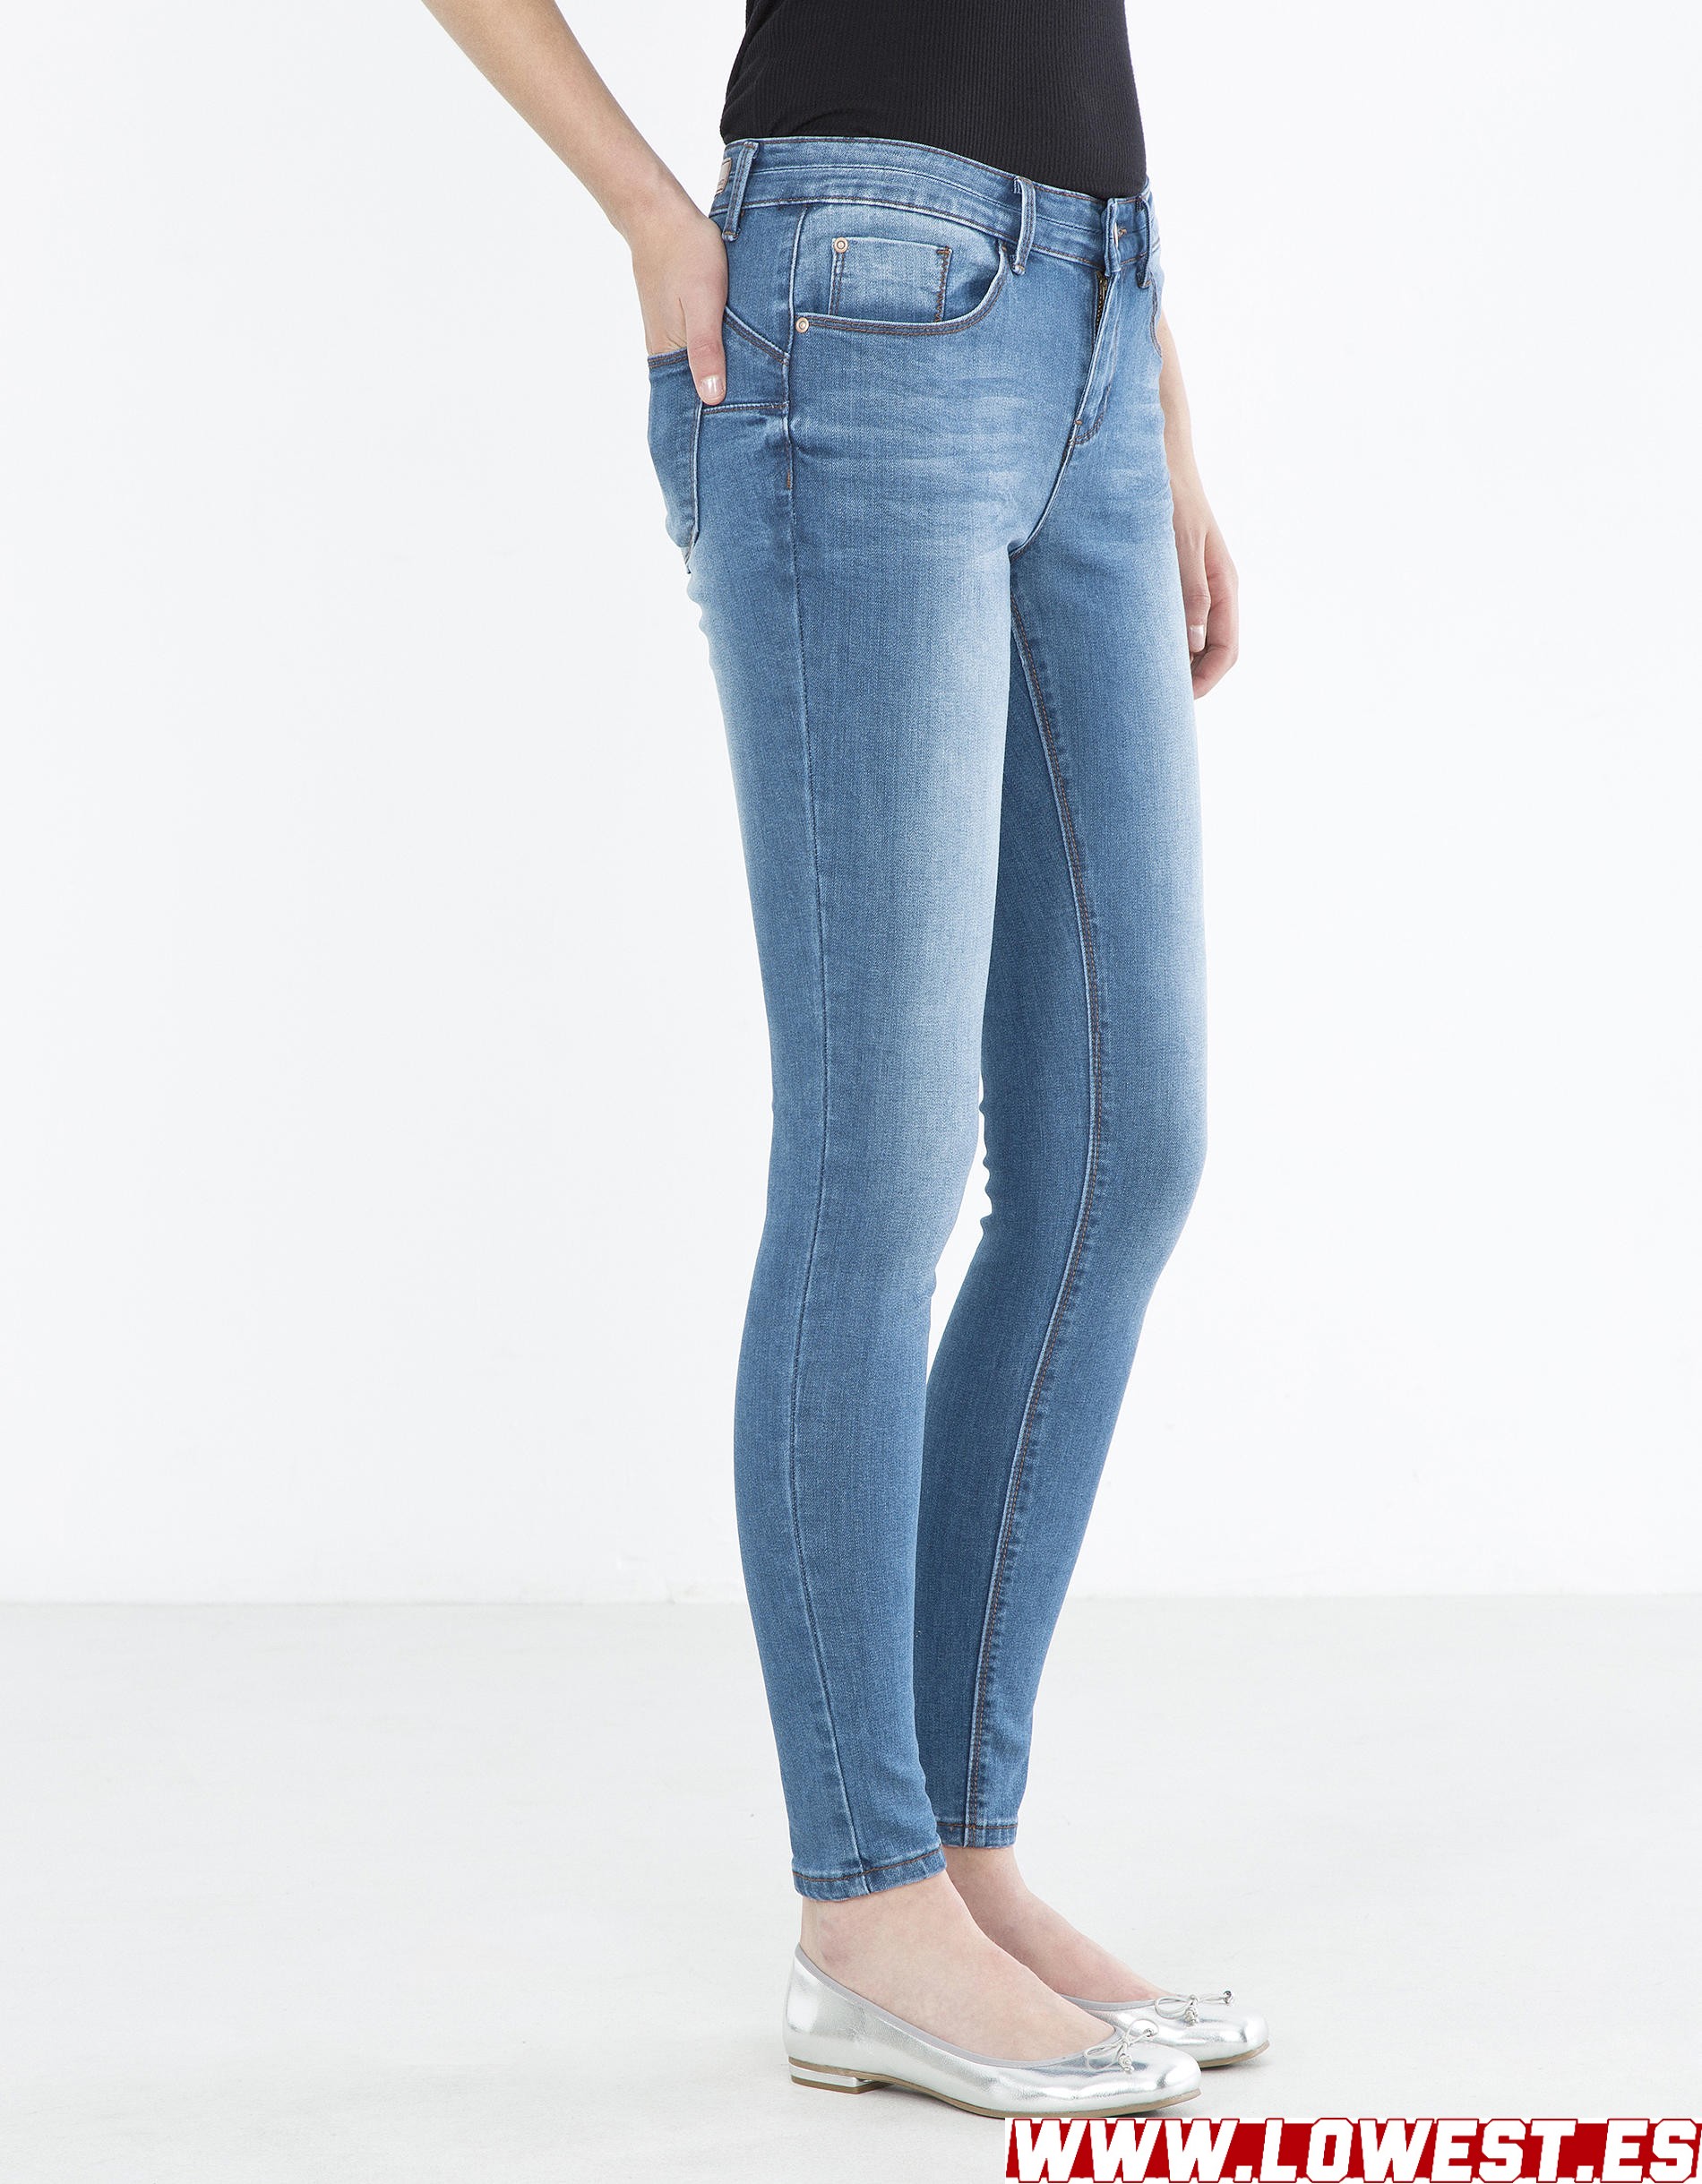 moda joven mujer jeans vaqueros vintage 2019 2020